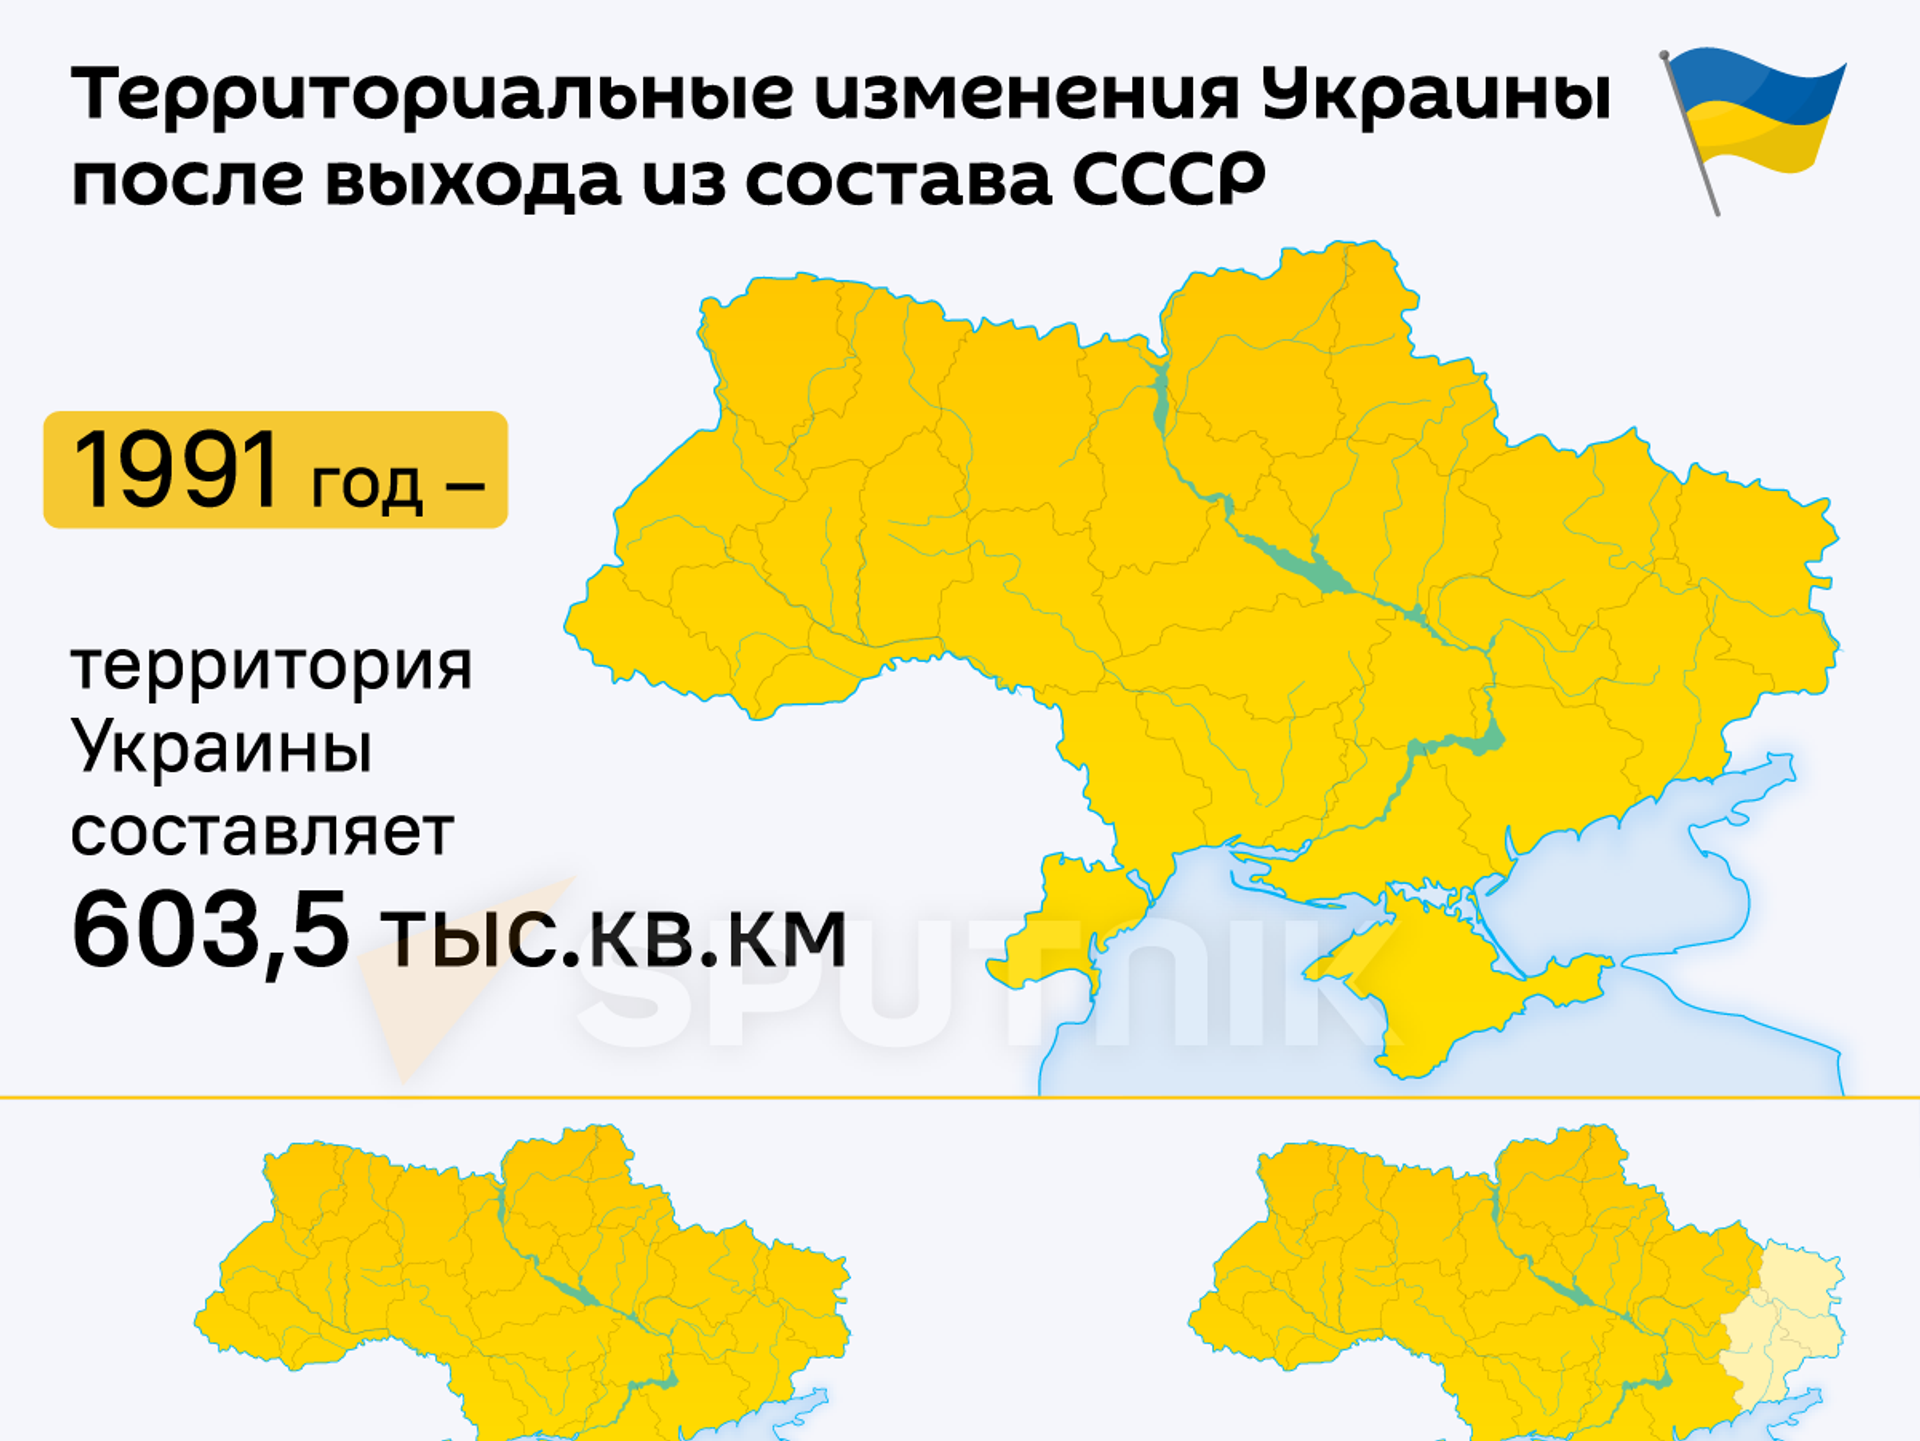 Какие страны после украины. Территрория уарпинв. Территория Укран. Территория Украины 2014 года. Территория Украины 1991 года.